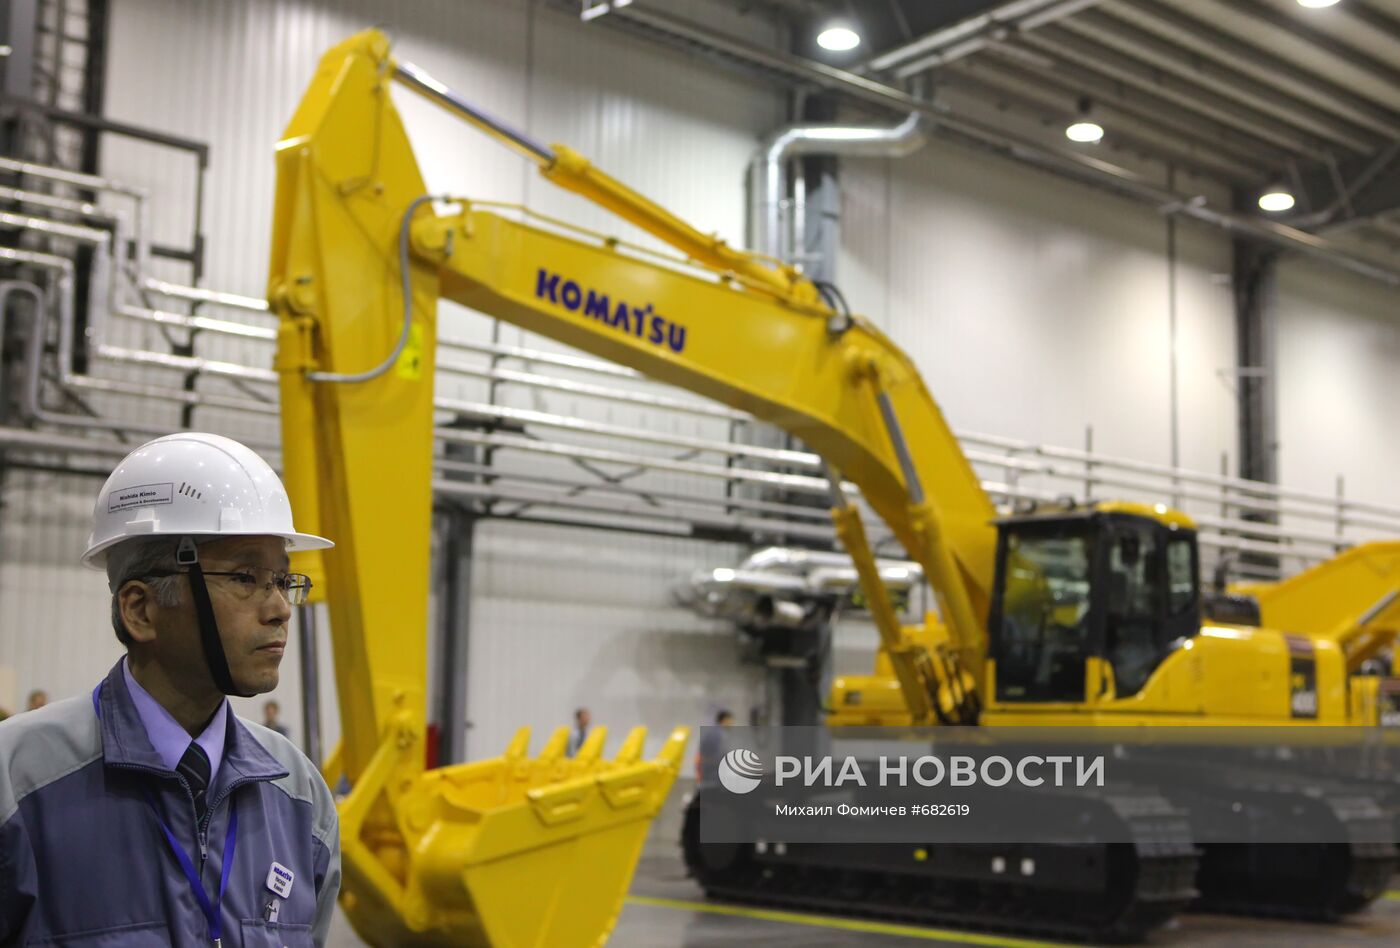 Открытие завода "Комацу" в Ярославле